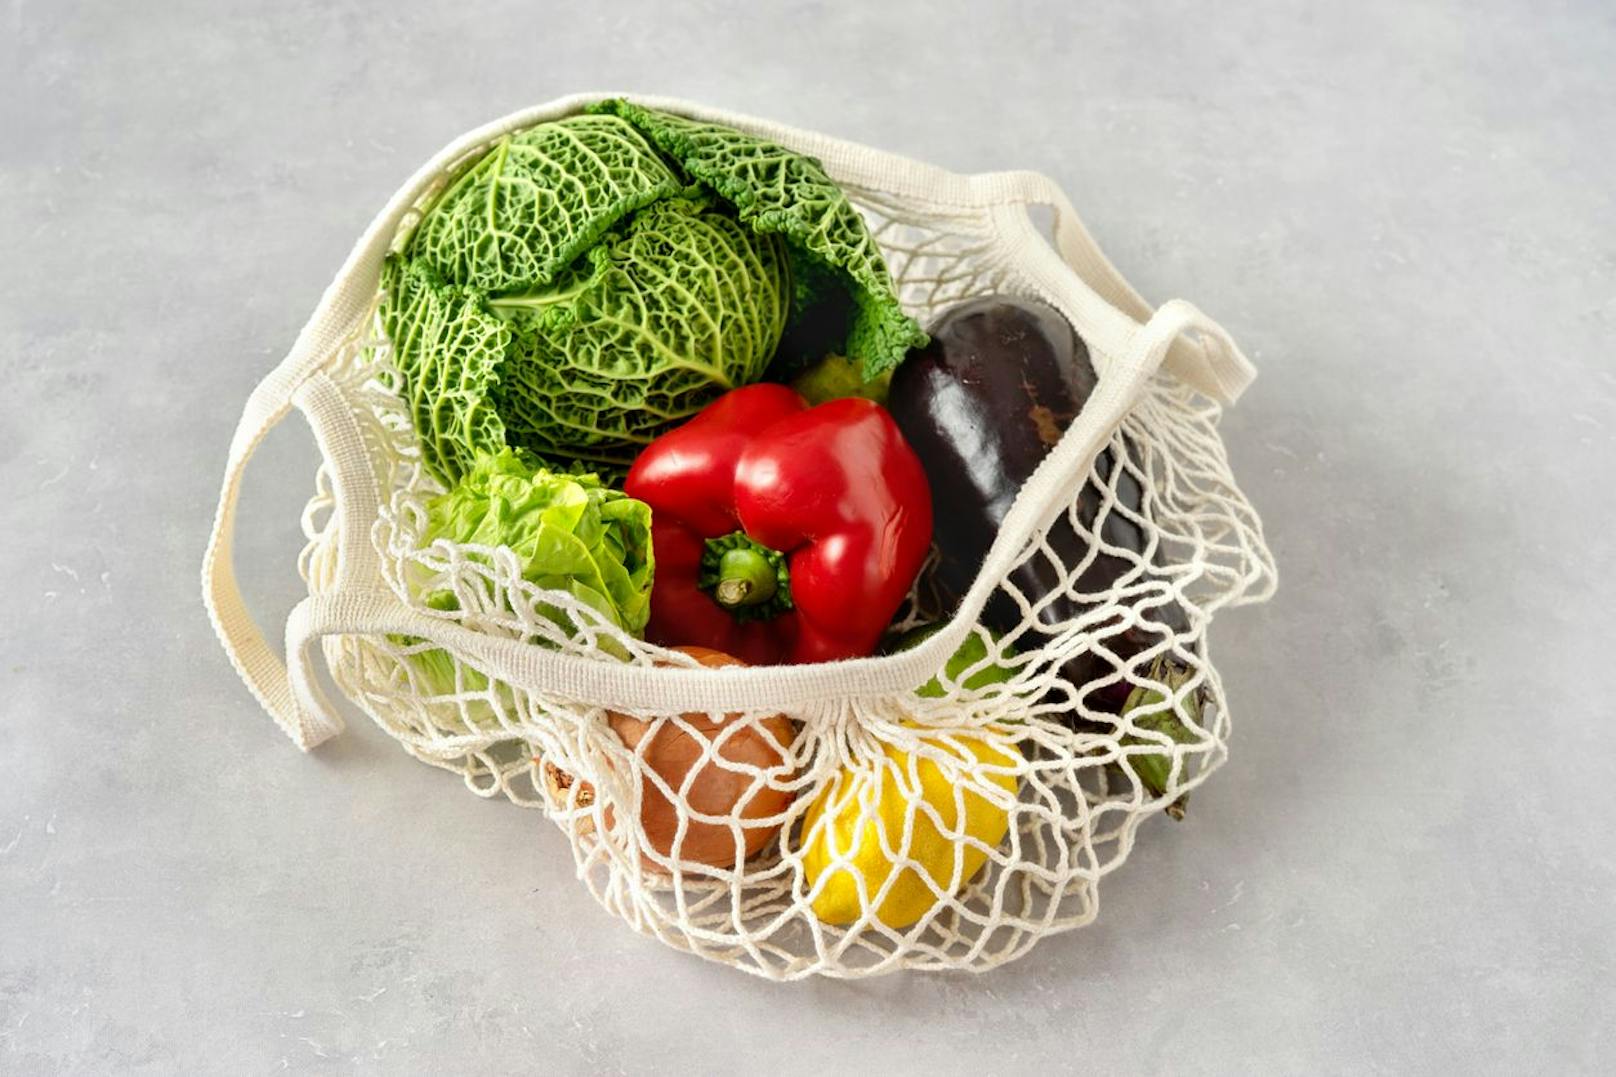 Anstatt immer wieder auf die kleinen Plastiktaschen im Supermarkt zurückzugreifen solltest du dir einen Mehrwegbeutel für dein loses Obst und Gemüse besorgen. Dieses kann eine kleine Stofftasche sein oder ein praktisches DIY aus einem T-Shirt.